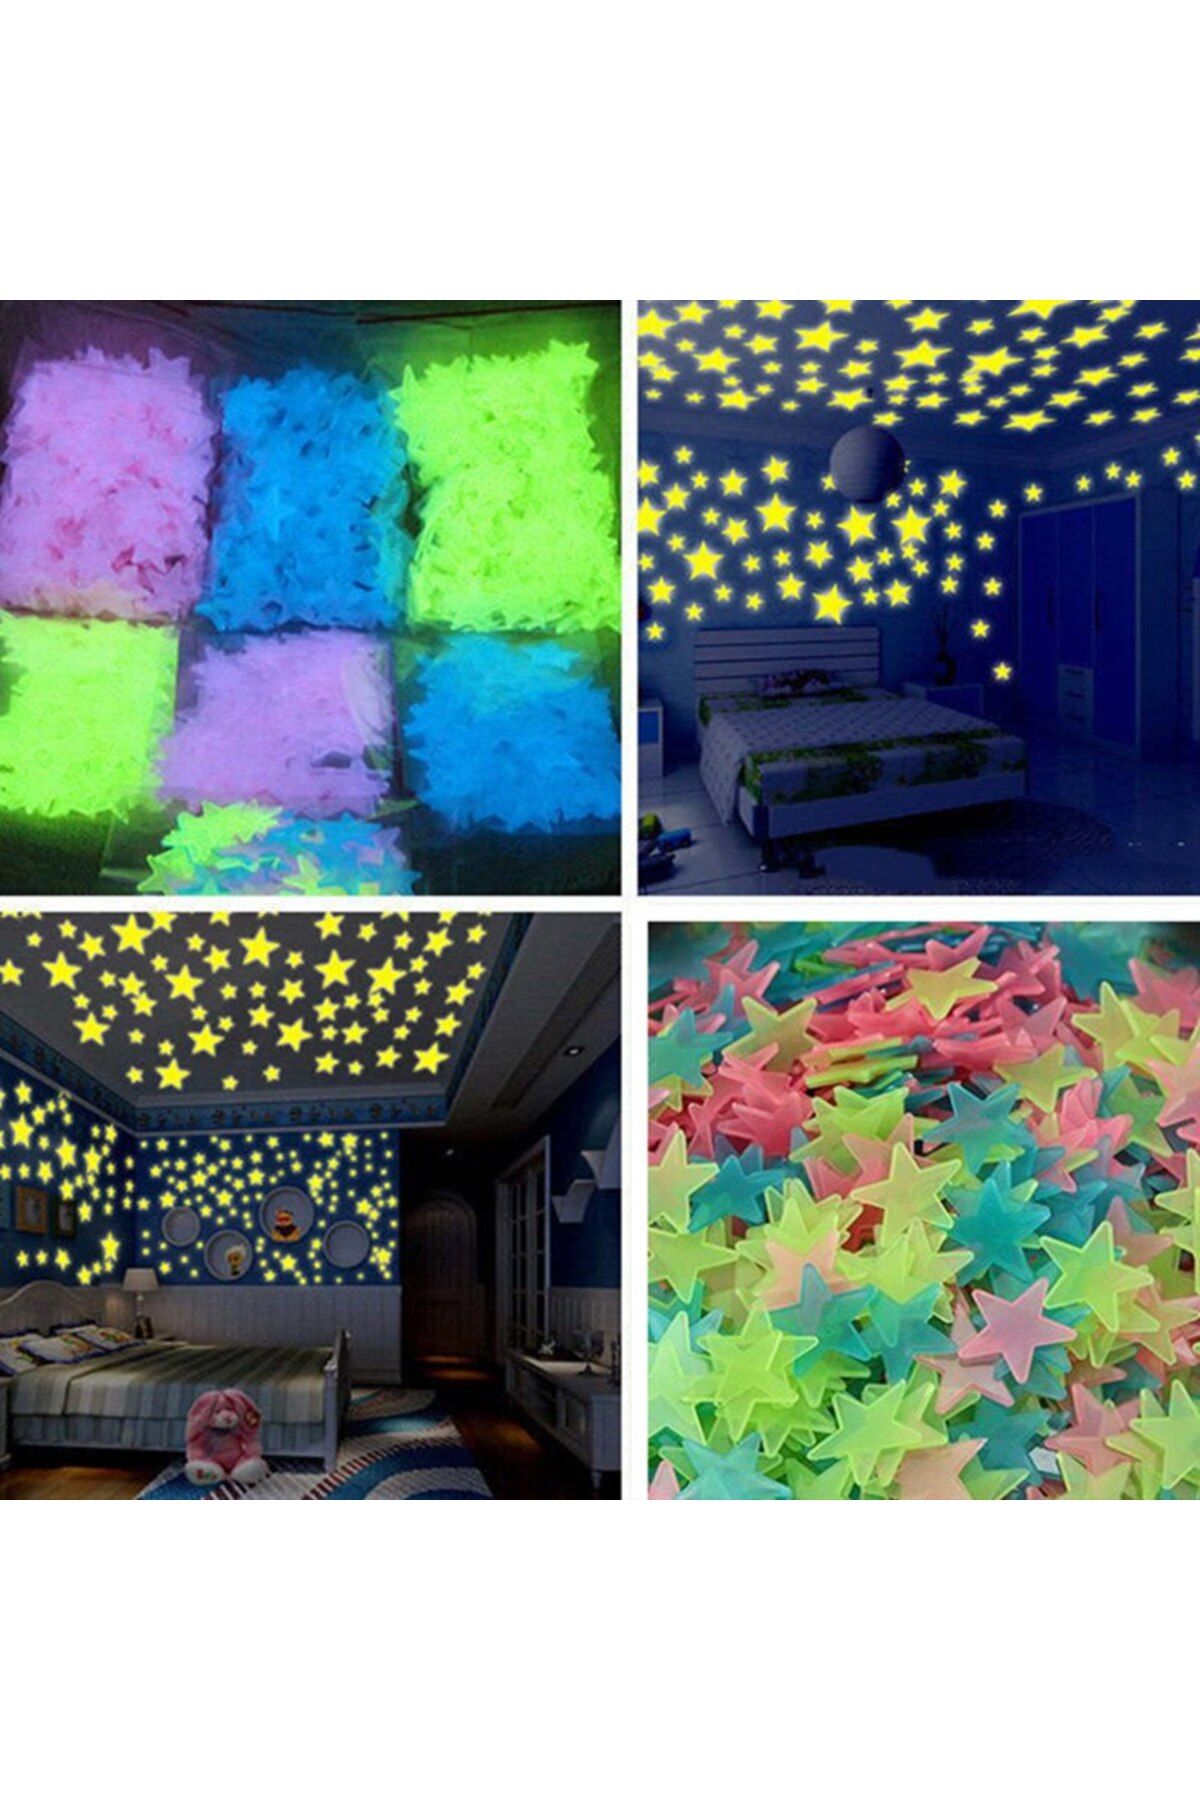 LEDONLİNE 150 Adet Karışık Renk Fosforlu Yıldız Duvar Tavan Süsleri Çocuk Odası